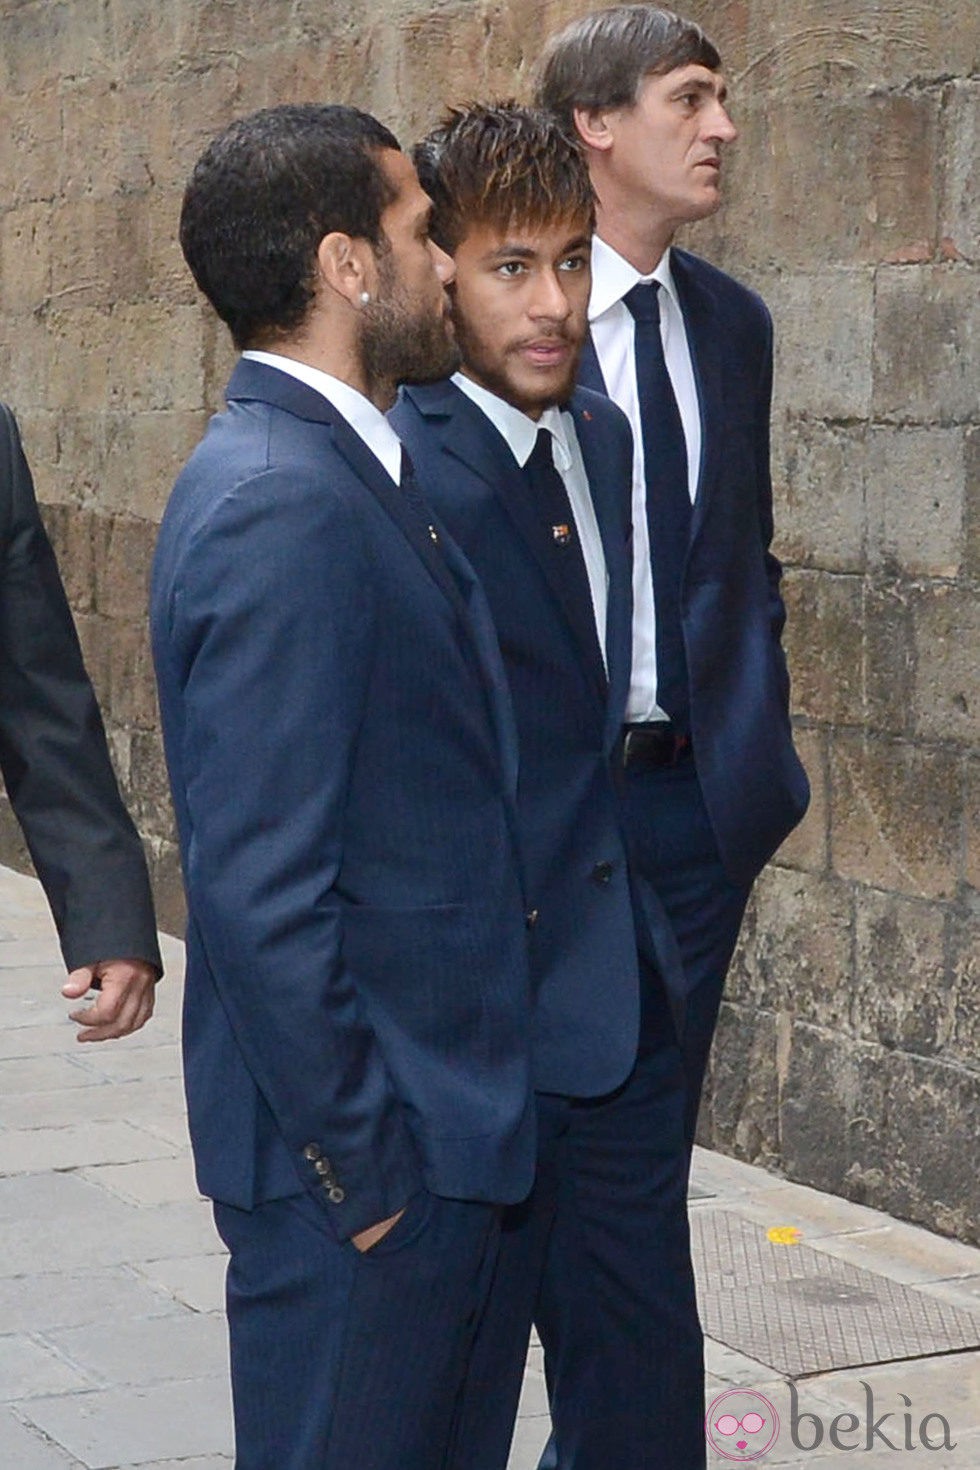 Dani Alves y Neymar en el funeral de Tito Vilanova en la Catedral de Barcelona